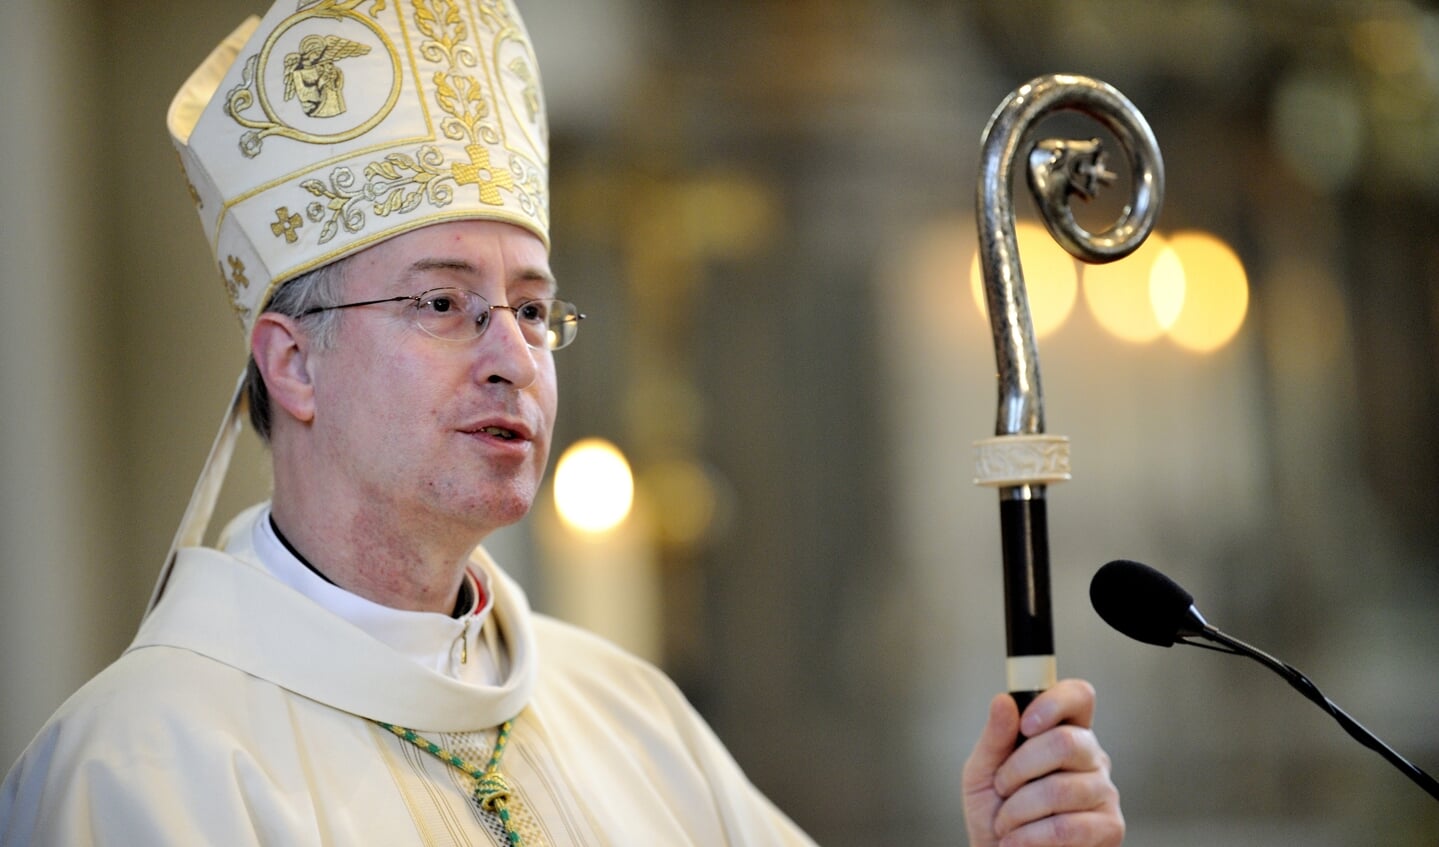 'We kunnen voorzien dat ook de Willibrord-editie die we nu gebruiken gedateerd raakt', stelt bisschop van Breda Jan Liesen.